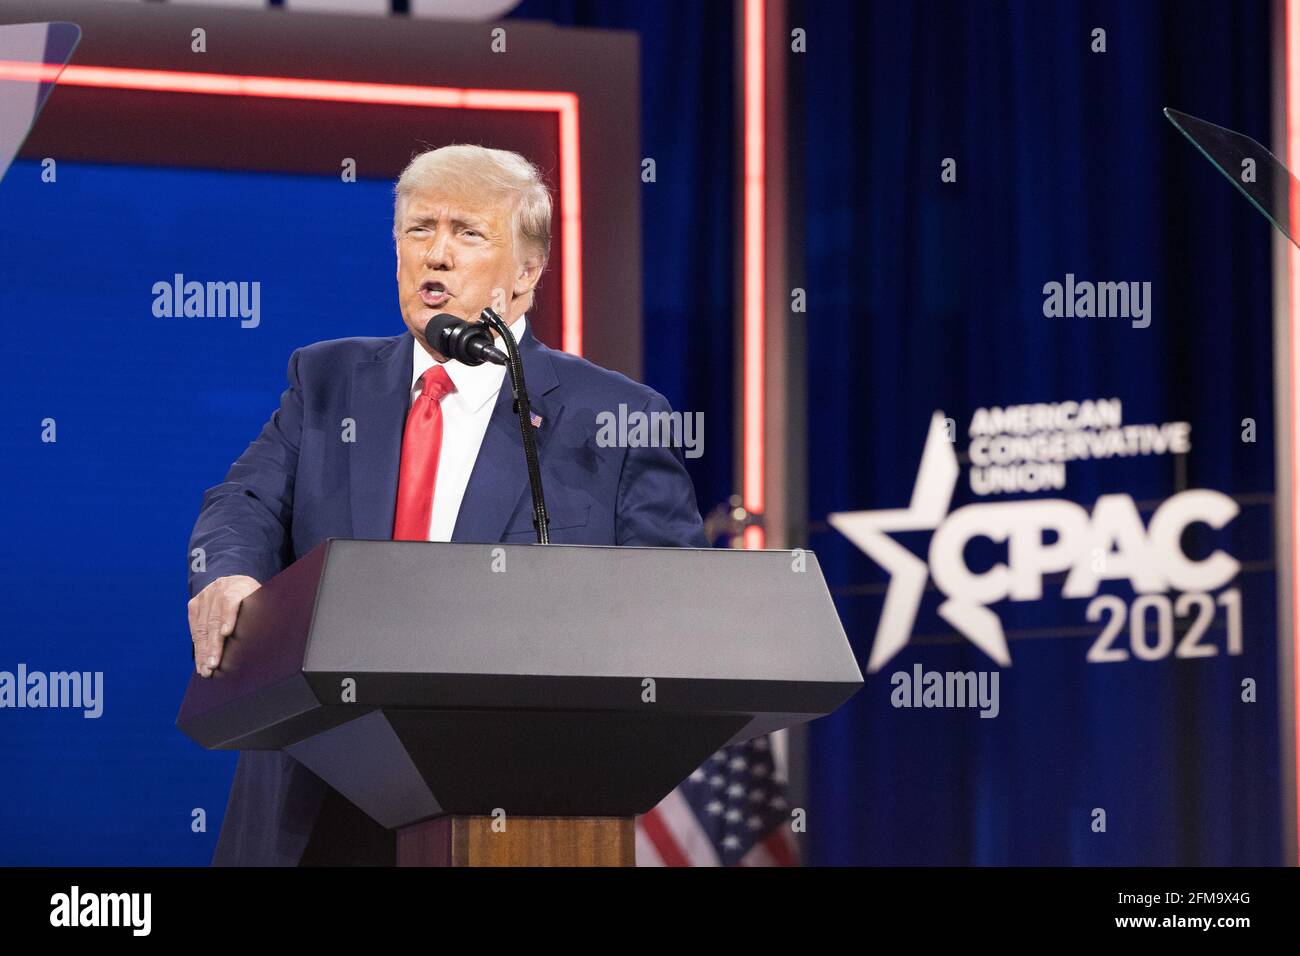 Orlando, Florida, 28. Februar 2021- Fmr. Präsident Donald J. Trump hält auf der Konferenz der Konservativen Politischen Aktion eine Rede Stockfoto